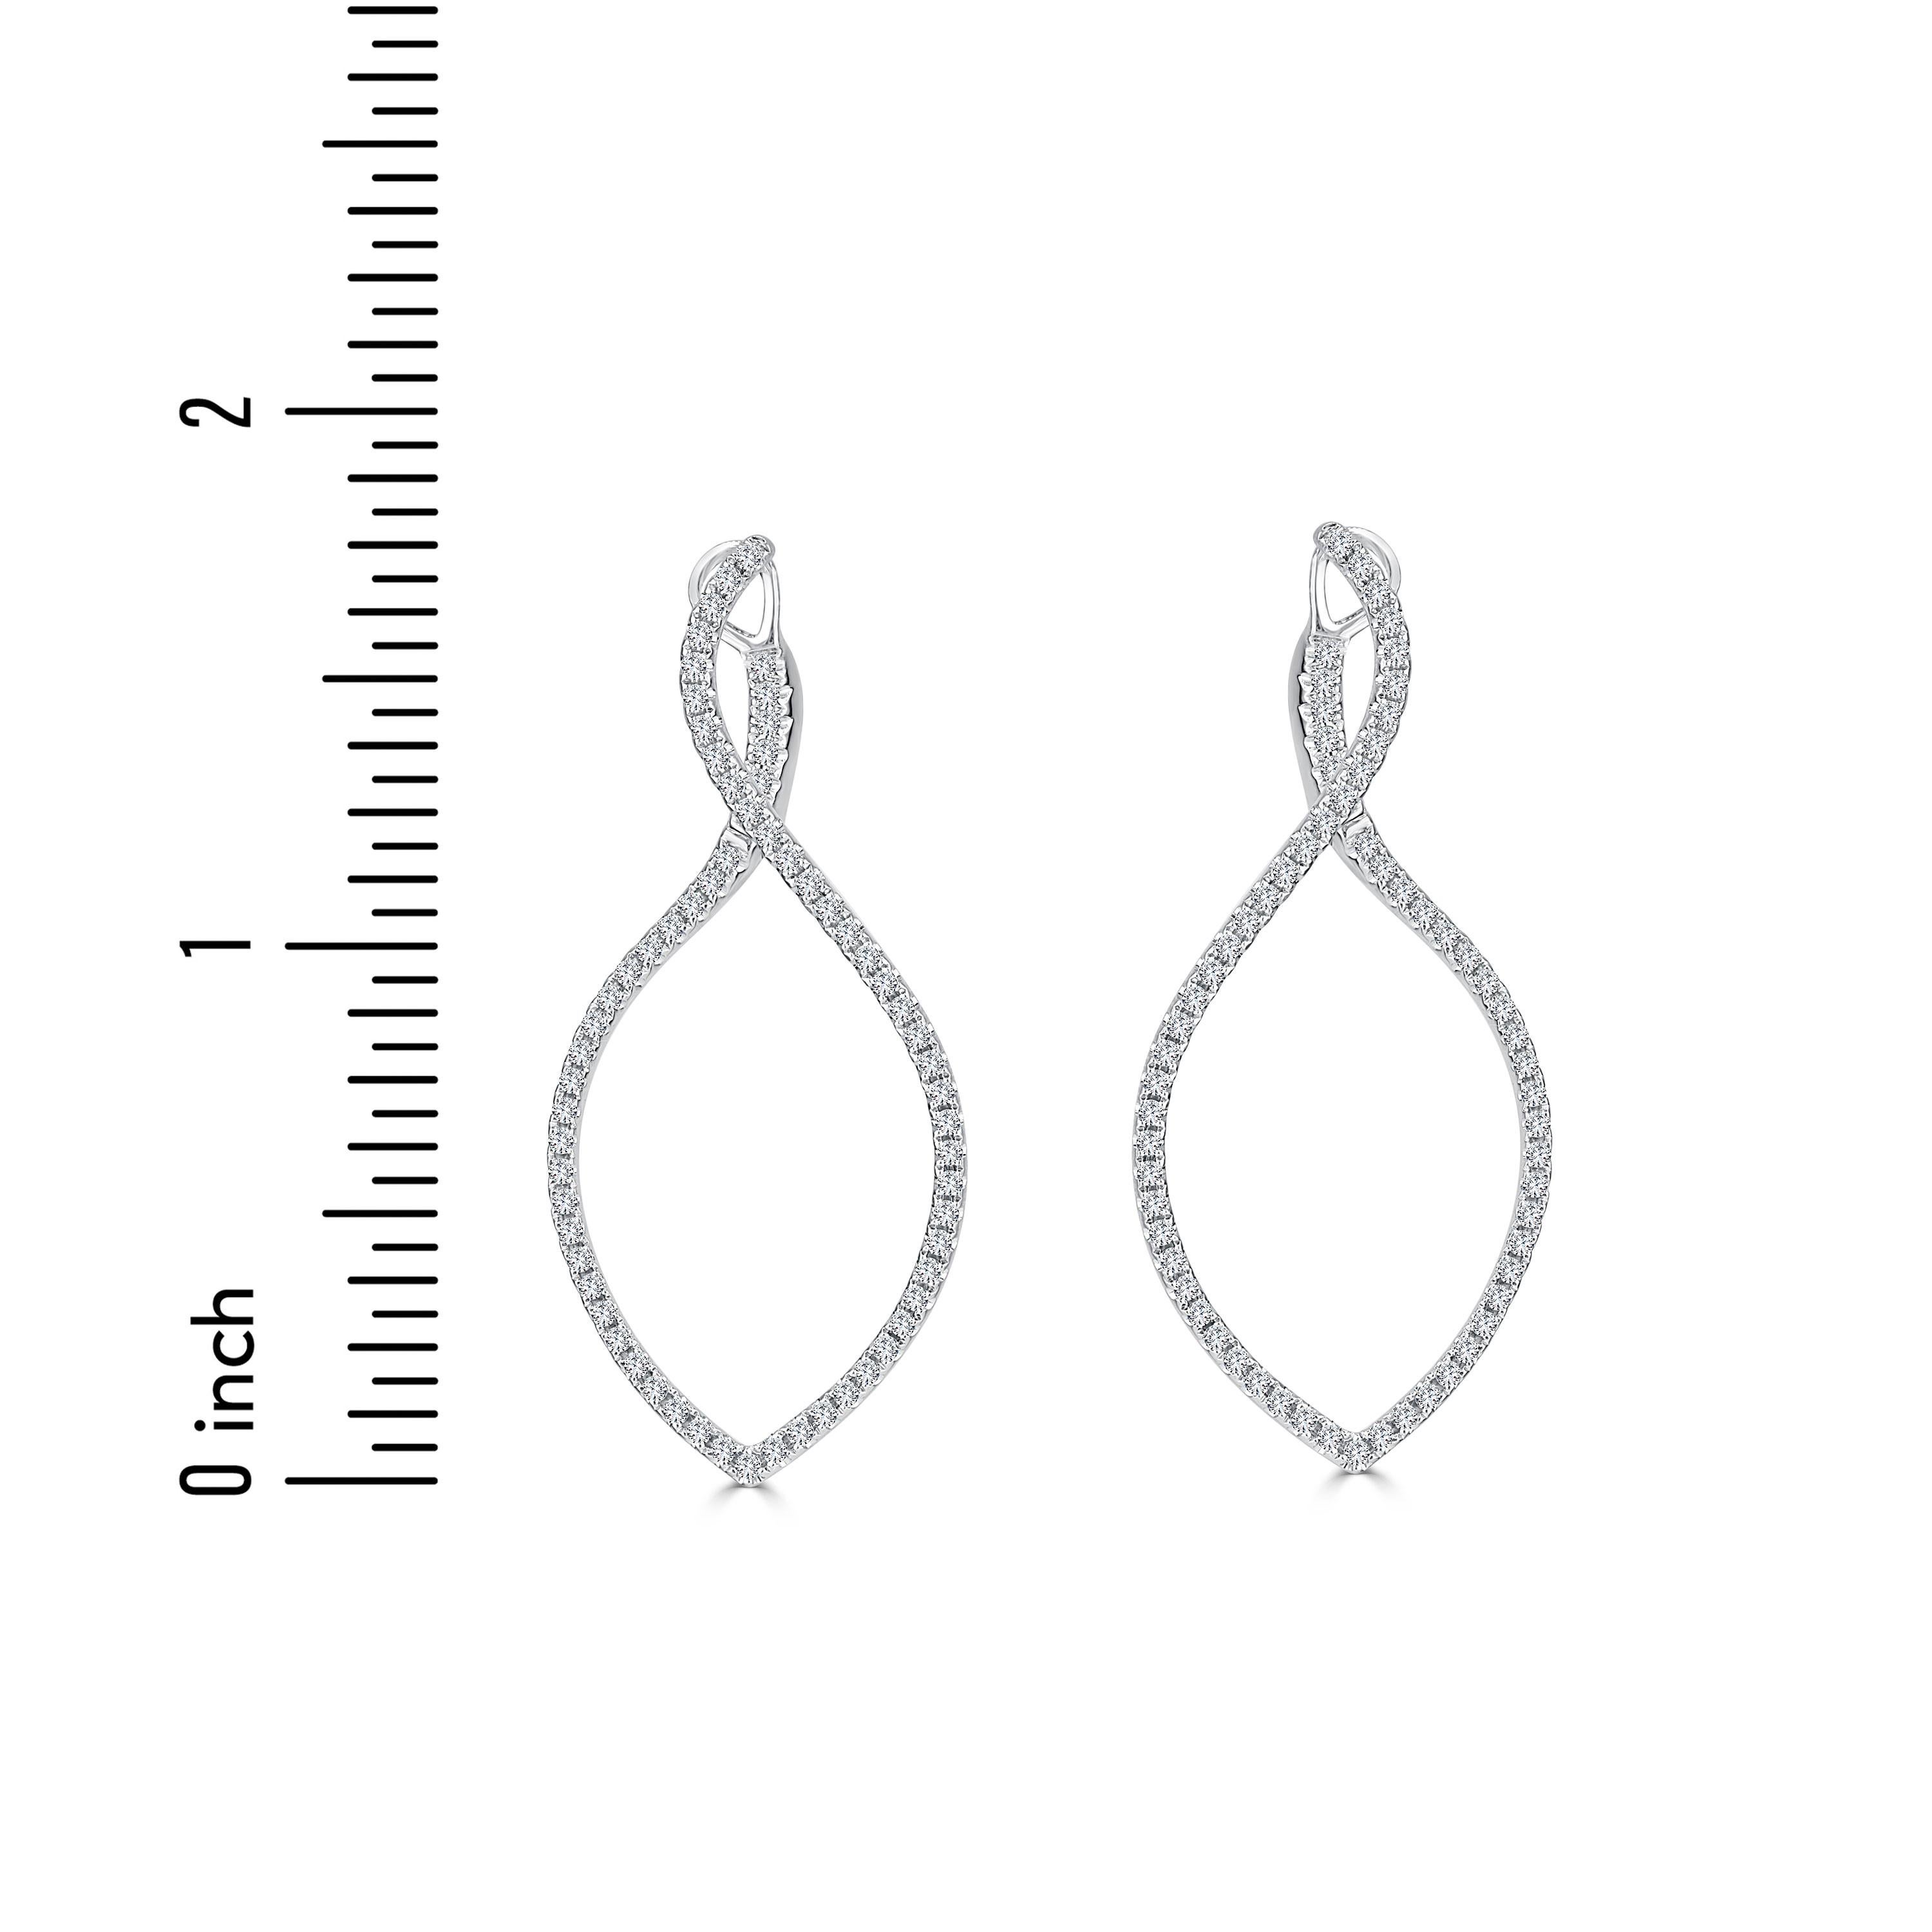 Diese exquisiten Reif-Ohrringe bieten eine einzigartige Abwandlung des klassischen Stils, indem sie ein elegantes tropfenförmiges Wirbeldesign enthalten. Die Vorderseite der Ohrringe zieren 1,01 Karat runde weiße Diamanten, die einen Hauch von